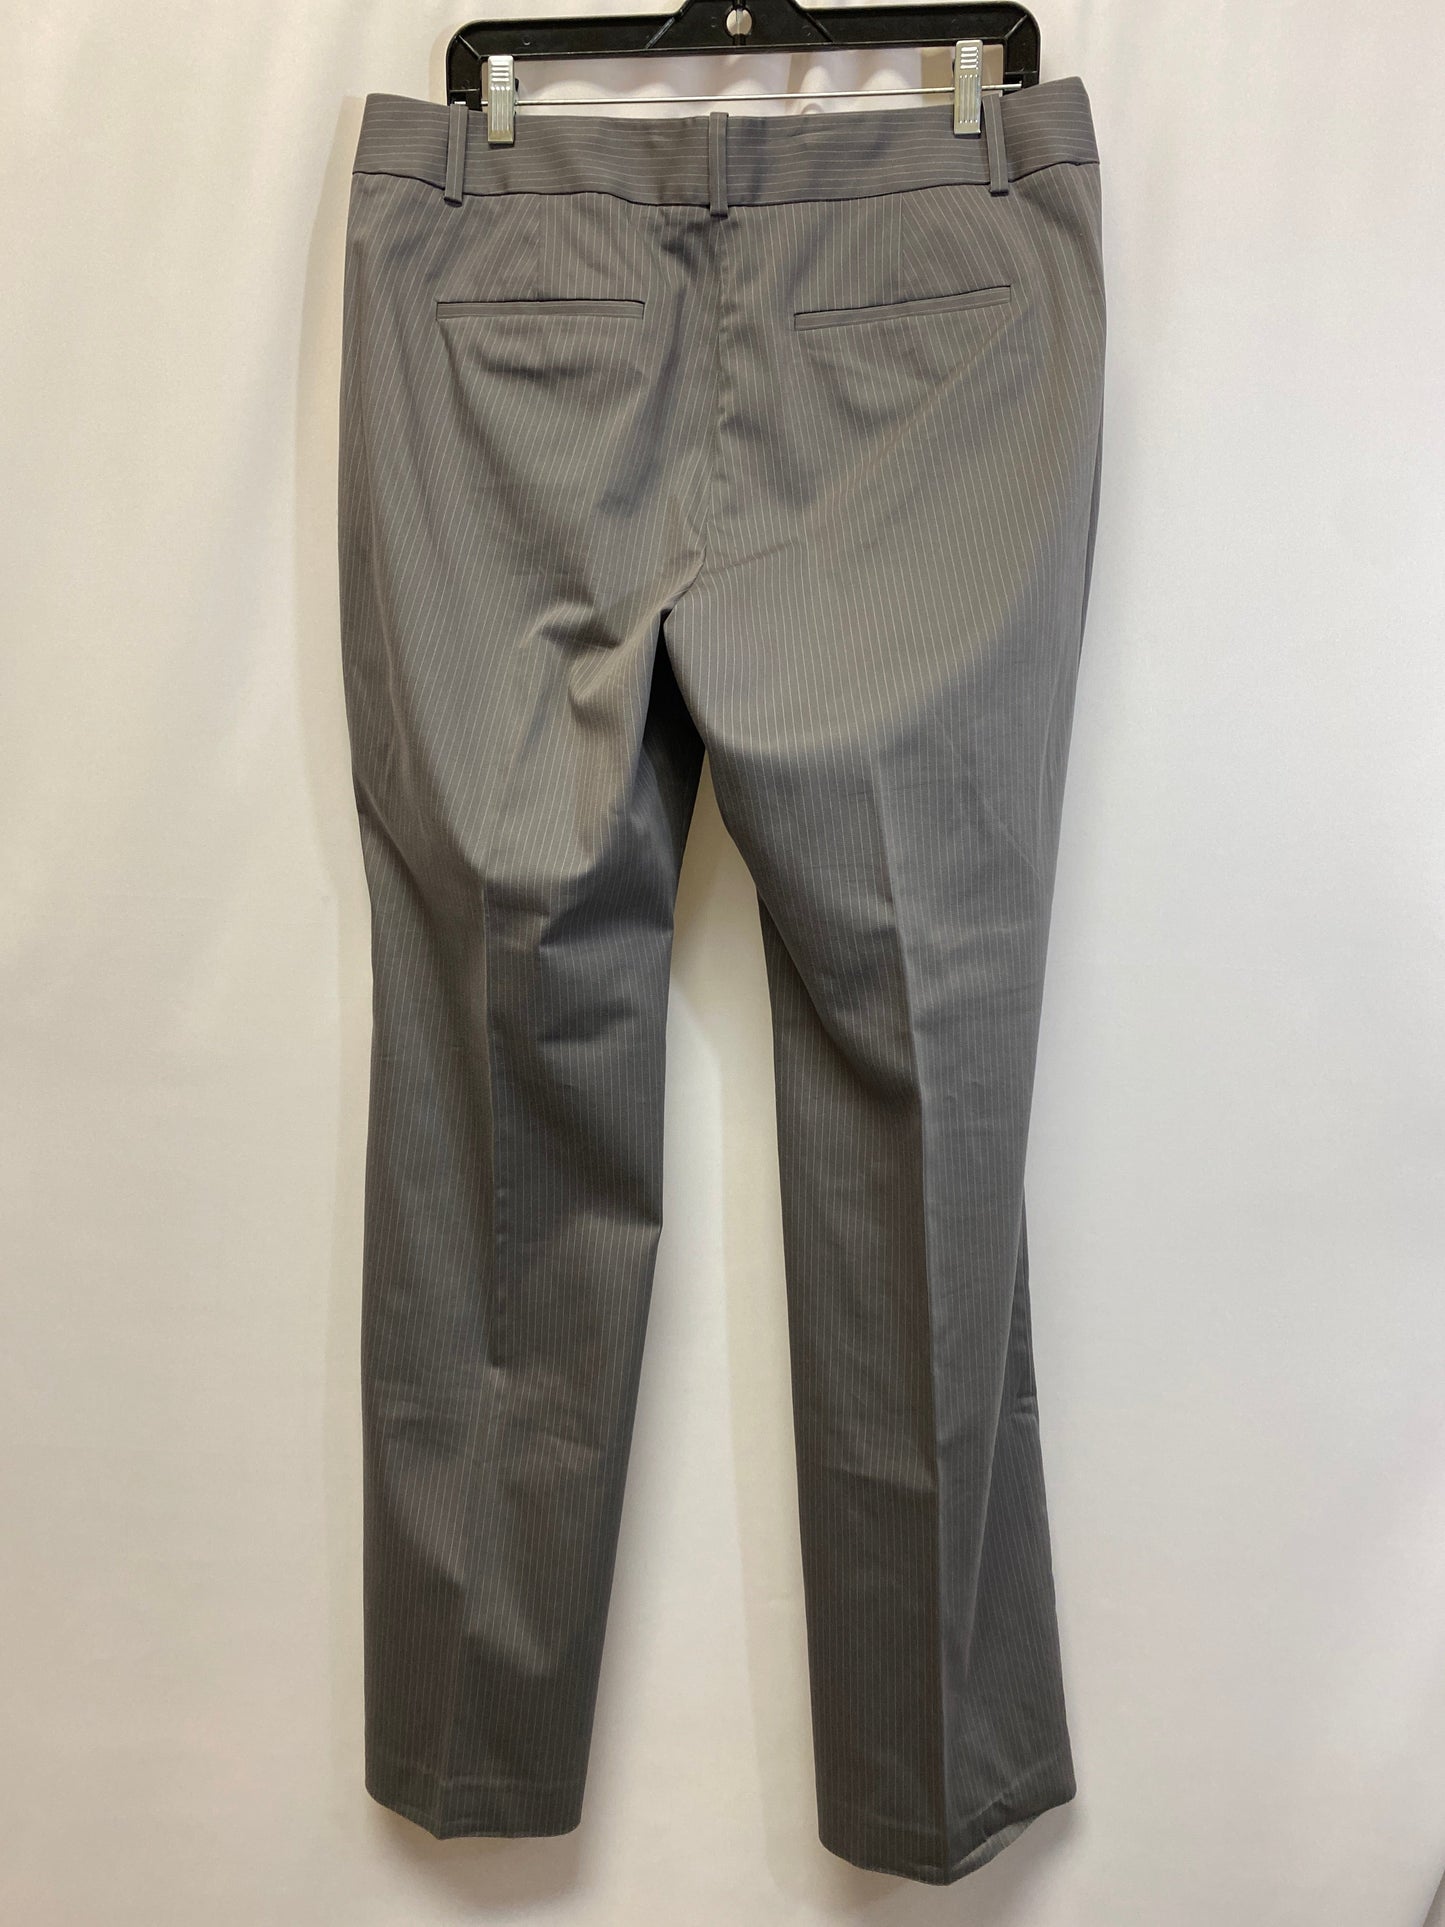 Grey Pants Dress Ann Taylor, Size 12